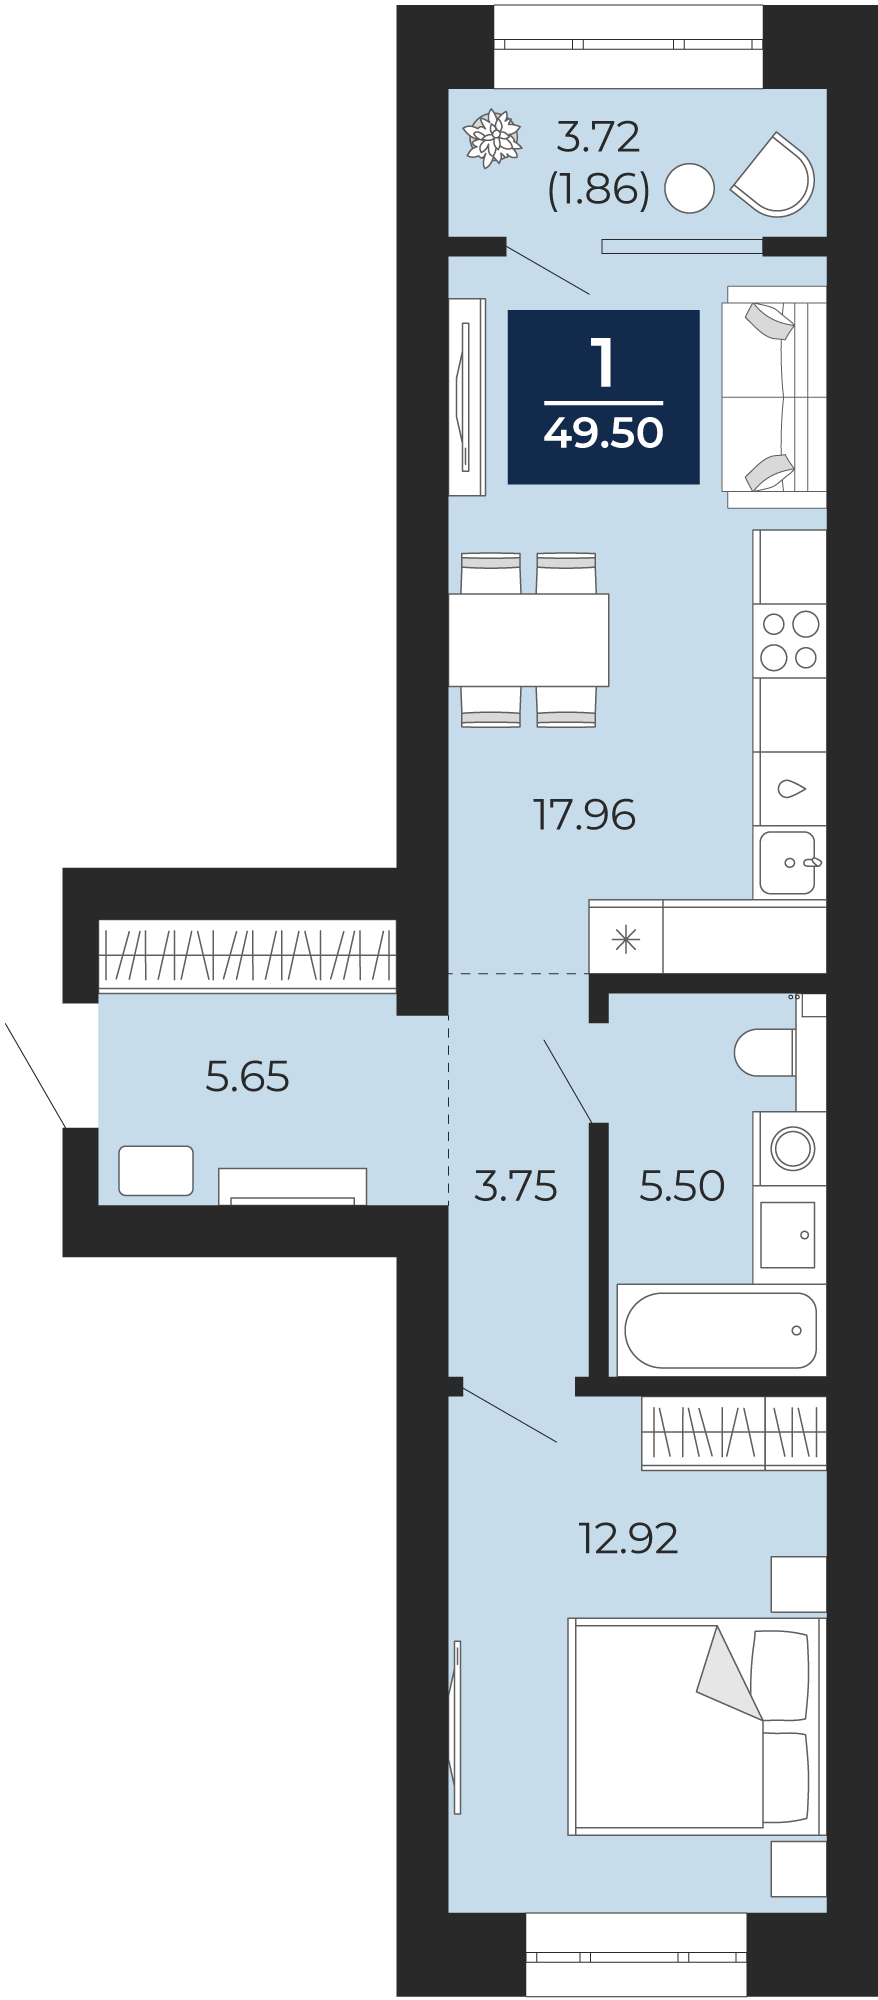 Квартира № 213, 1-комнатная, 49.5 кв. м, 4 этаж